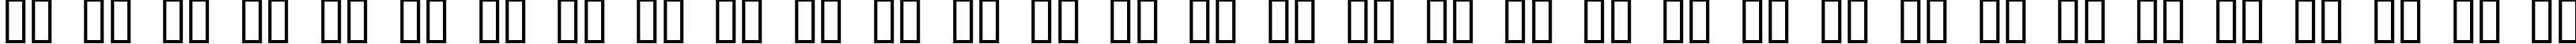 Пример написания русского алфавита шрифтом Candide Dingbats